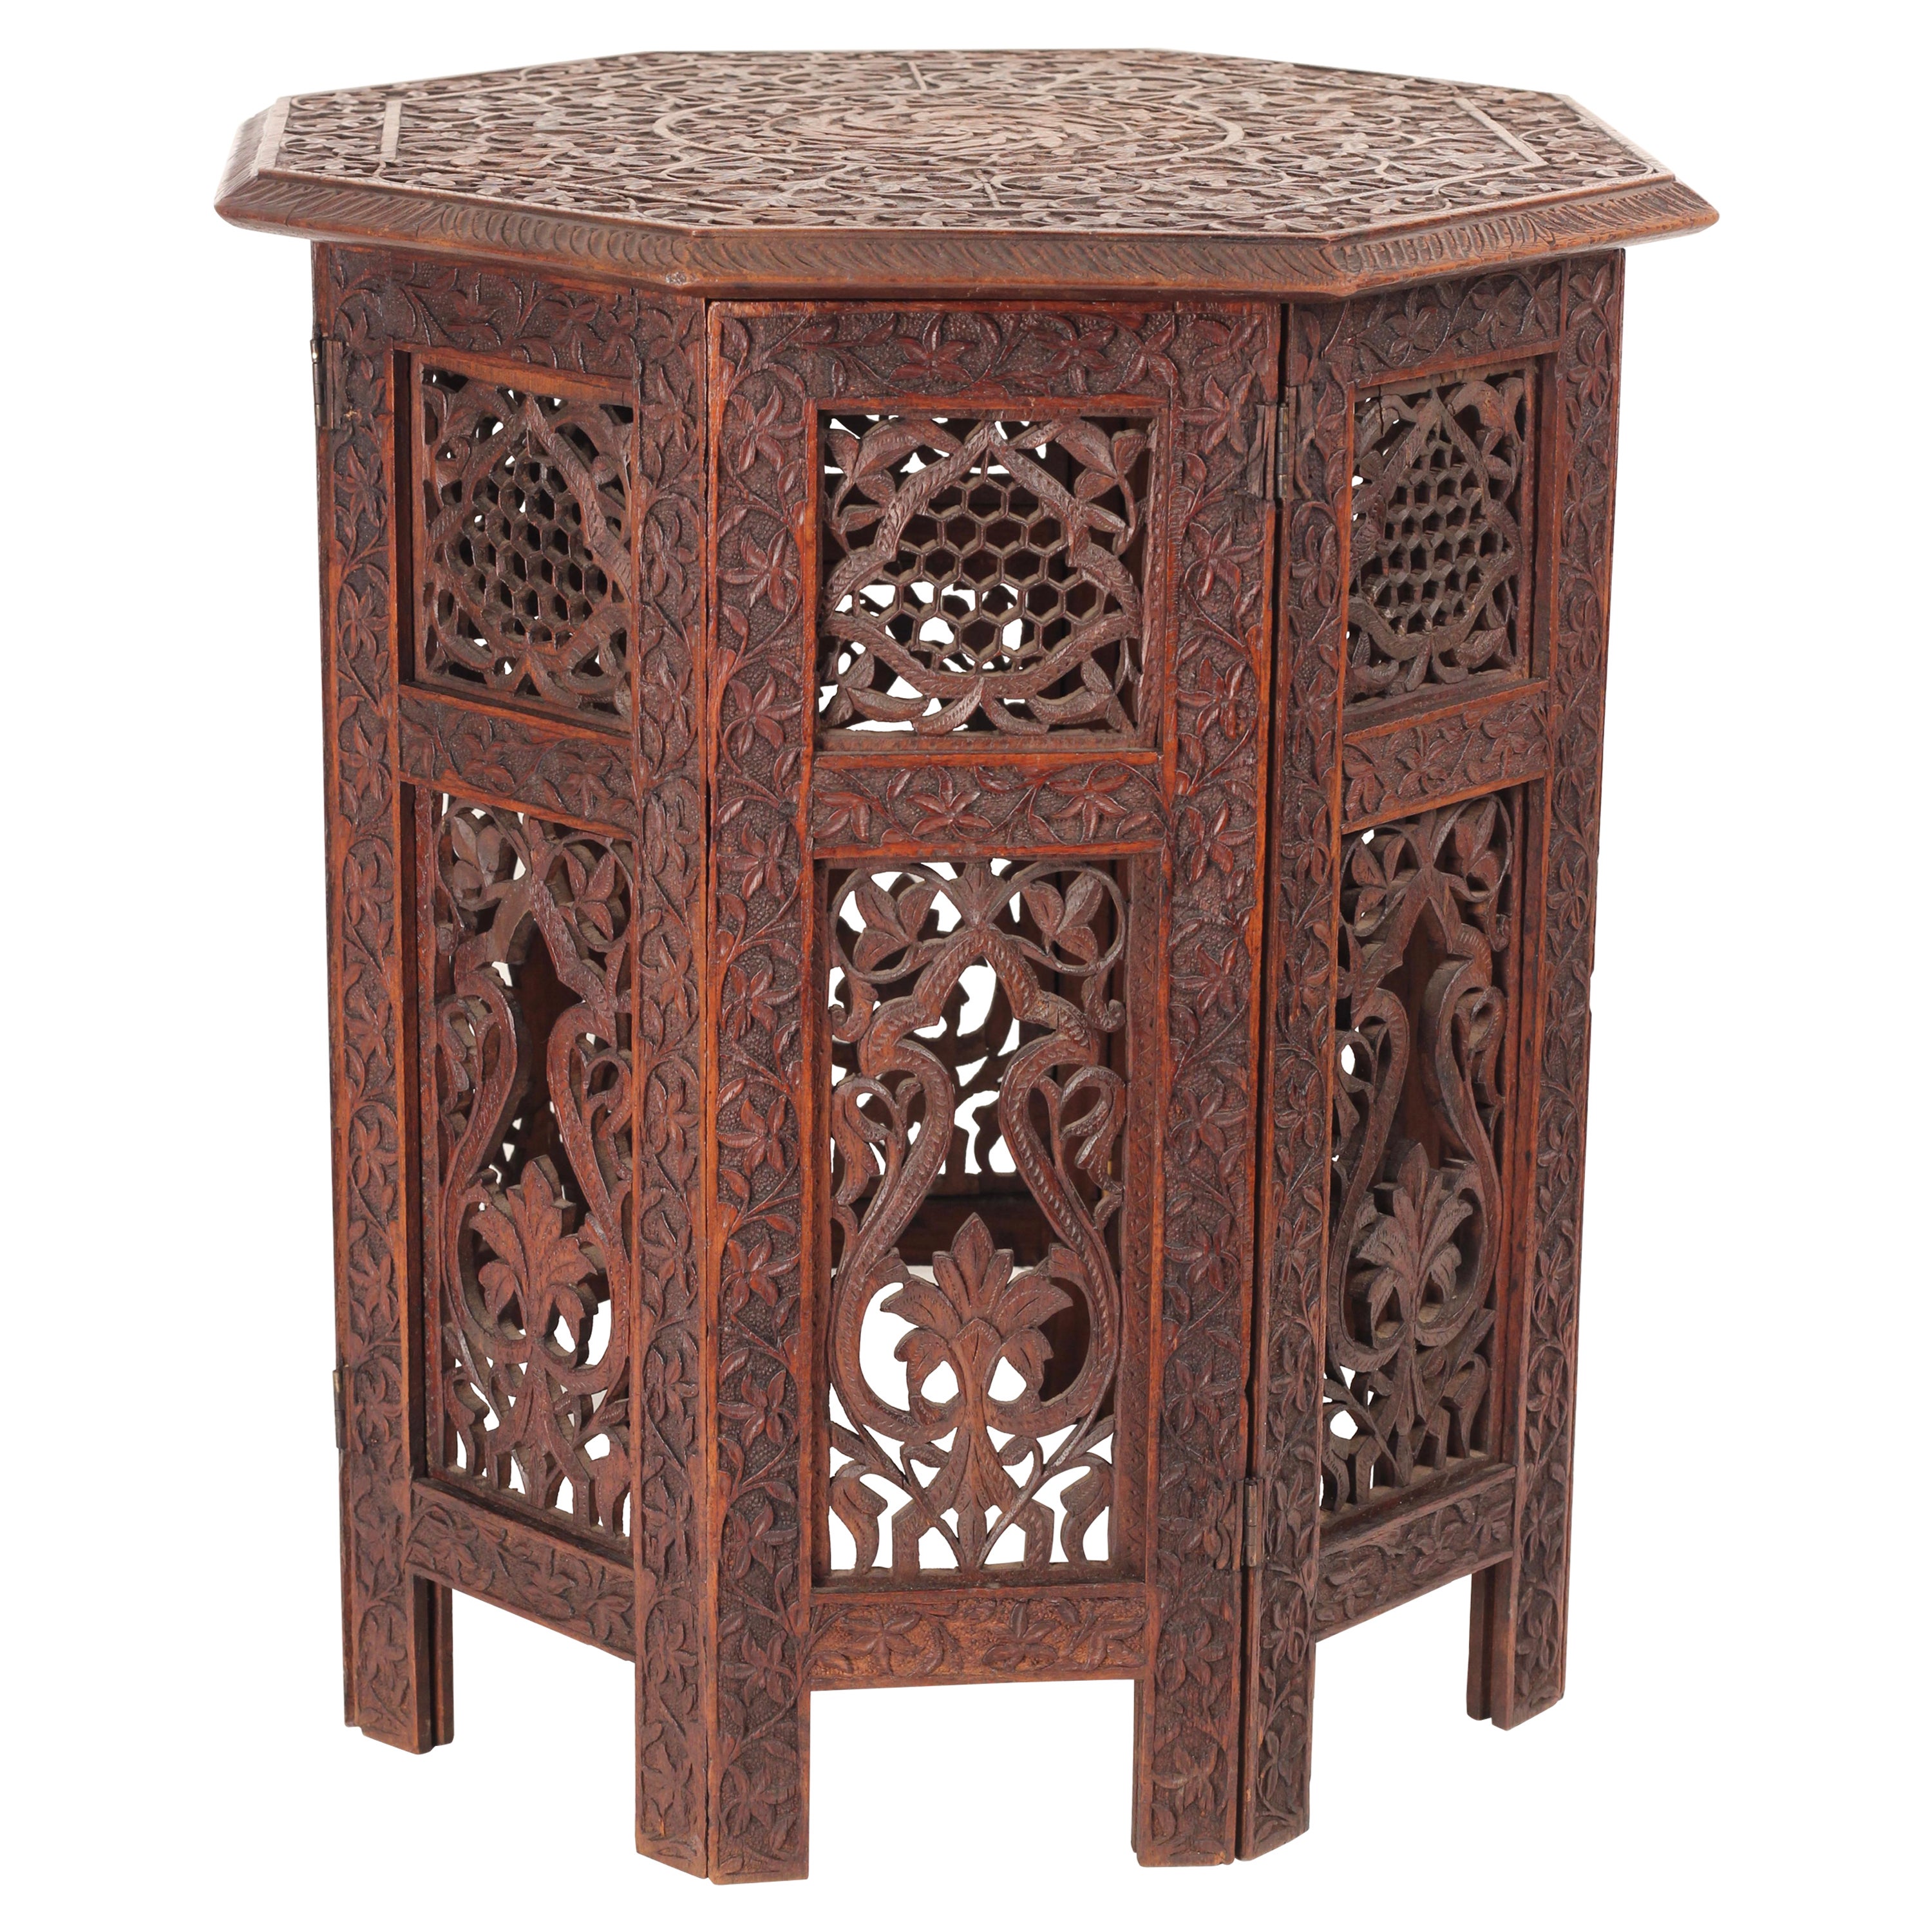 Table octogonale mauresque en bois sculptée à la main du 19ème siècle, style Boho Chic